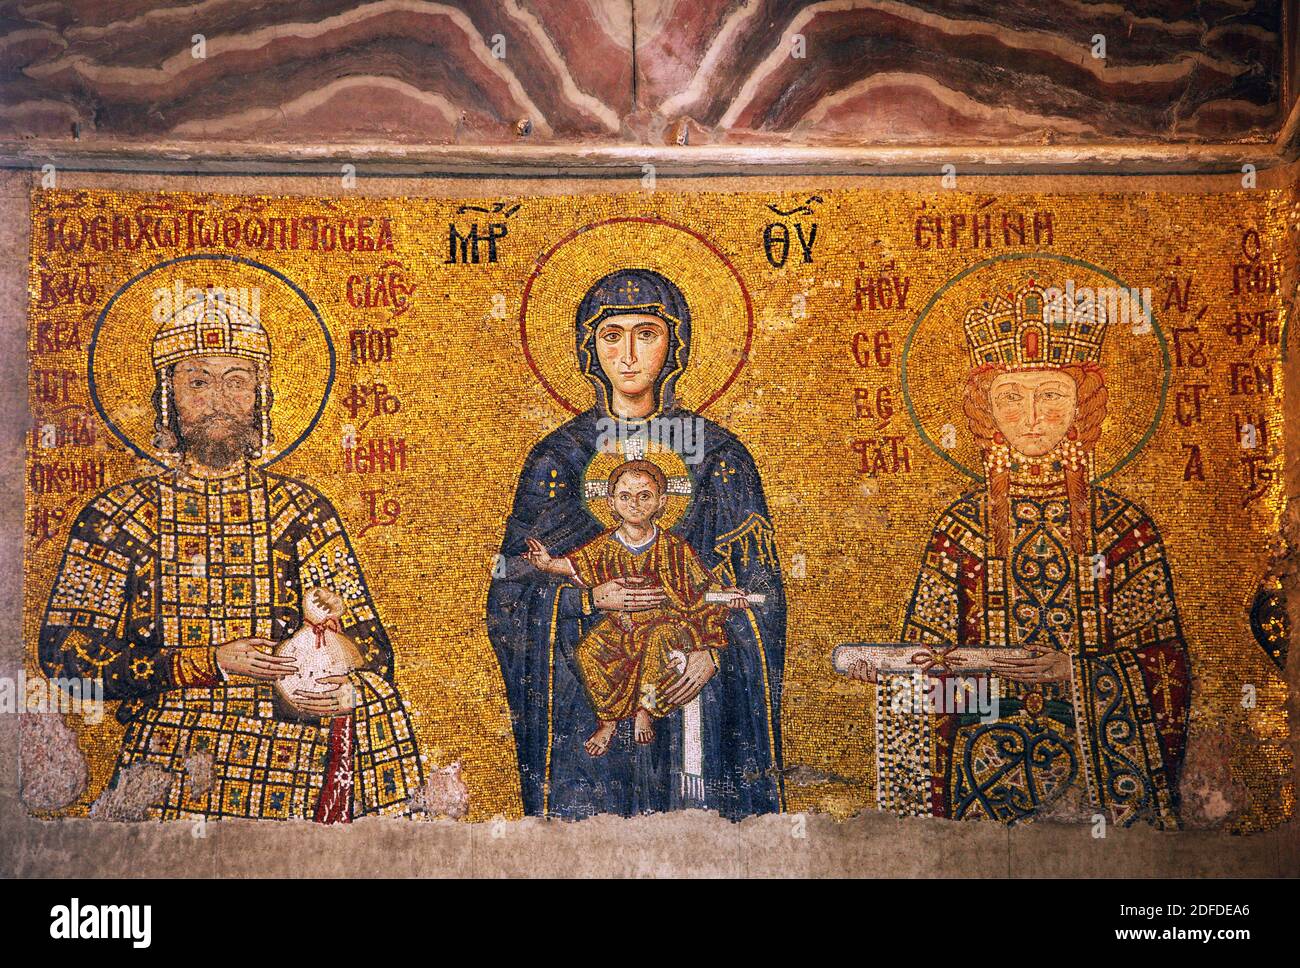 The Comnenus mosaic in Hagia Sophia, Istanbul, Turkey. Stock Photo